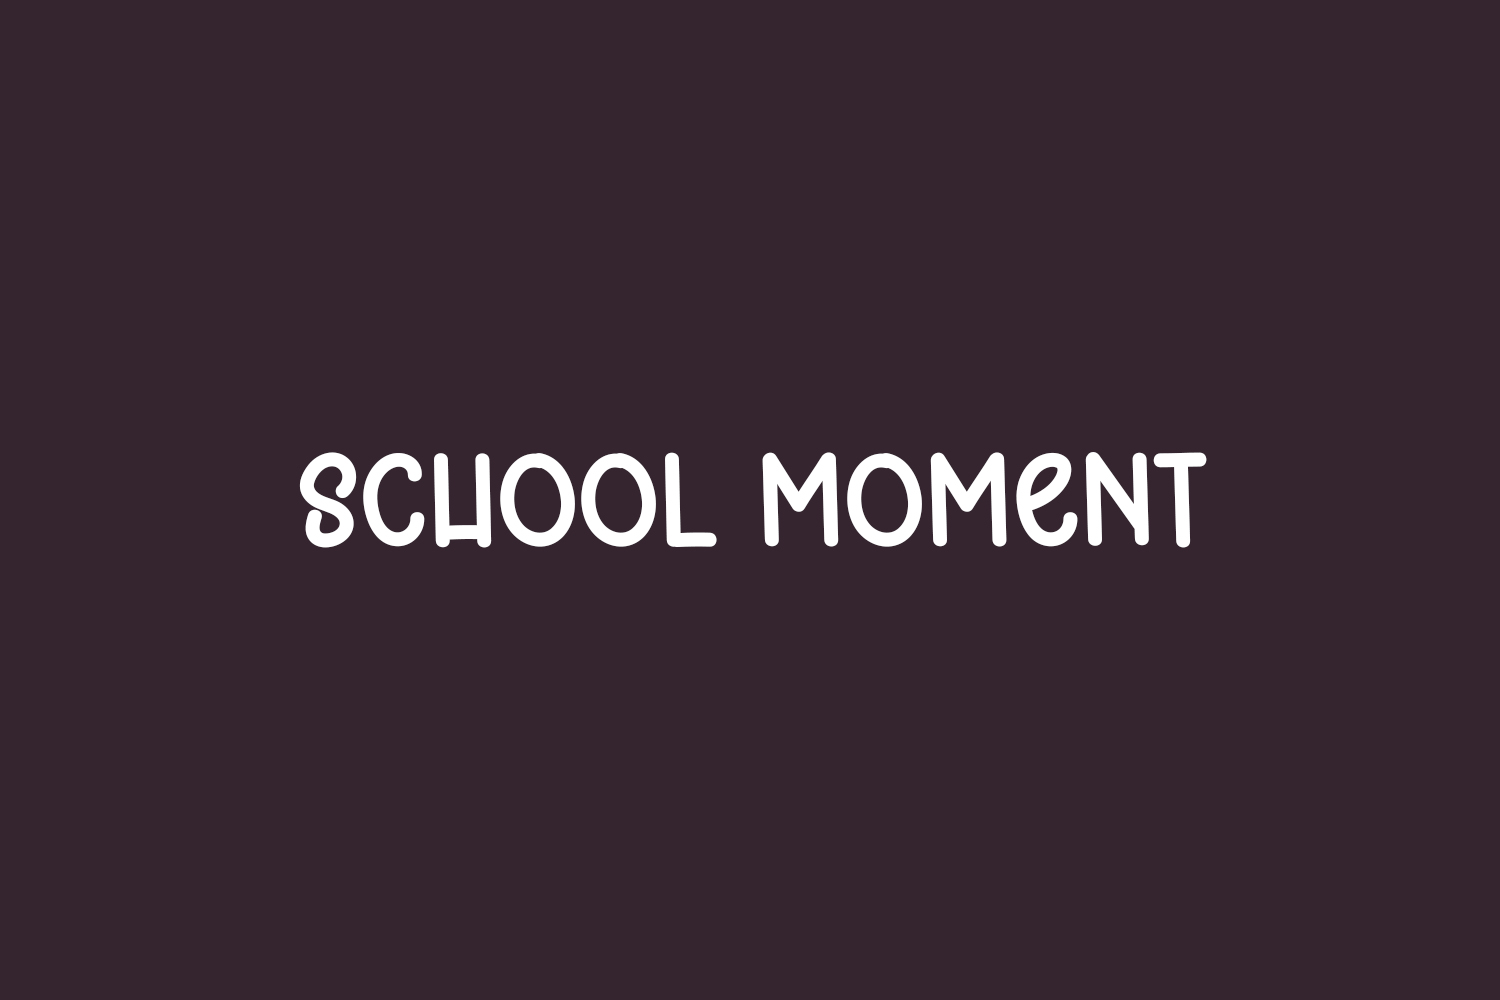 School Moment Free Font